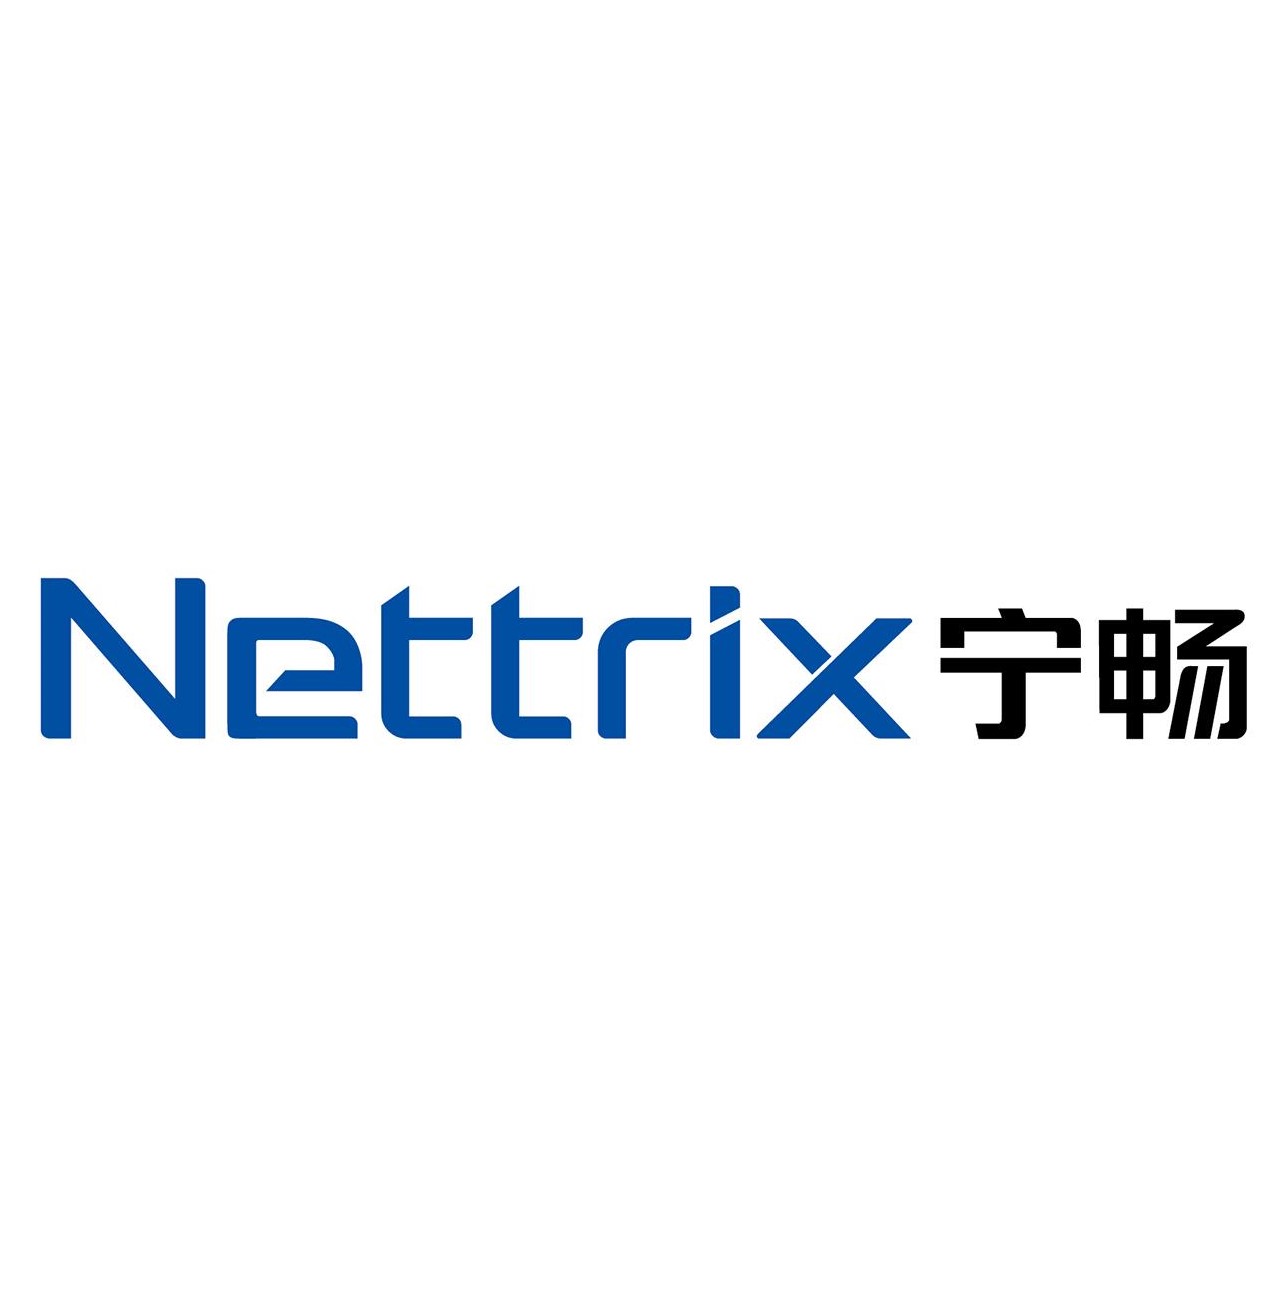 Nettrix